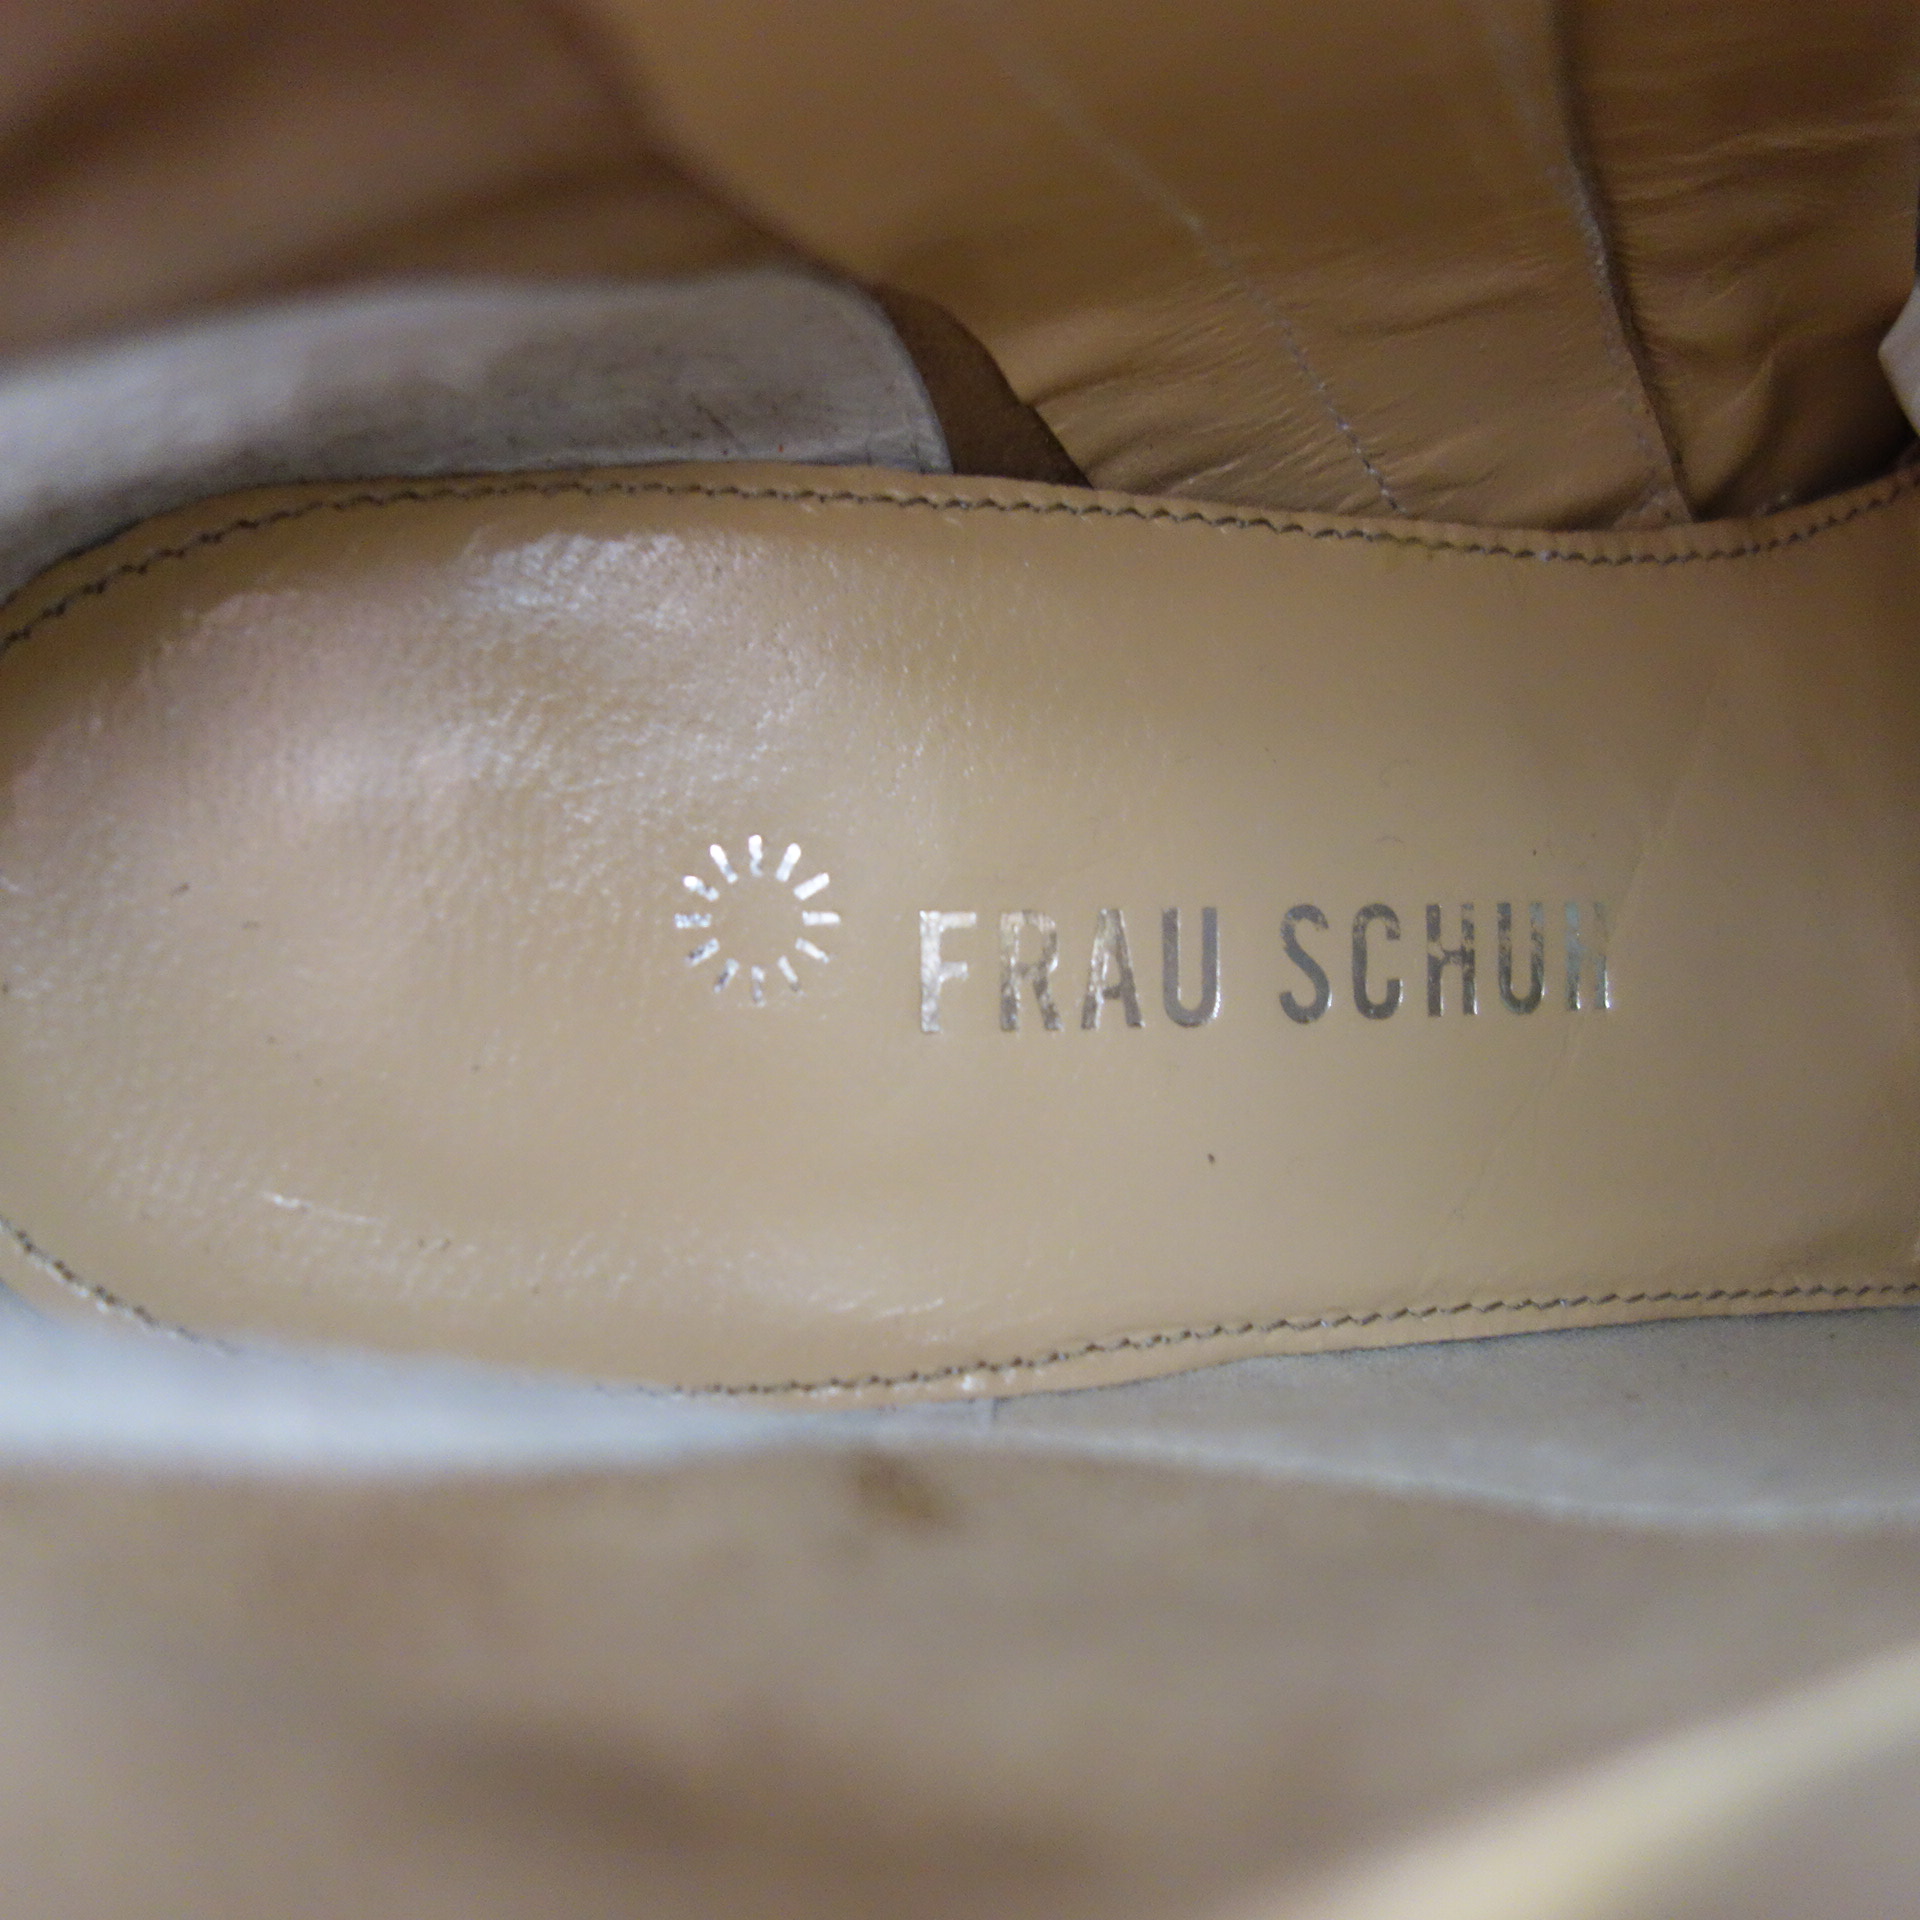 FRAU SCHUH Damen Schuhe Stiefel Stiefeletten Boots Braun Wildleder Größe 37,5 Spitz